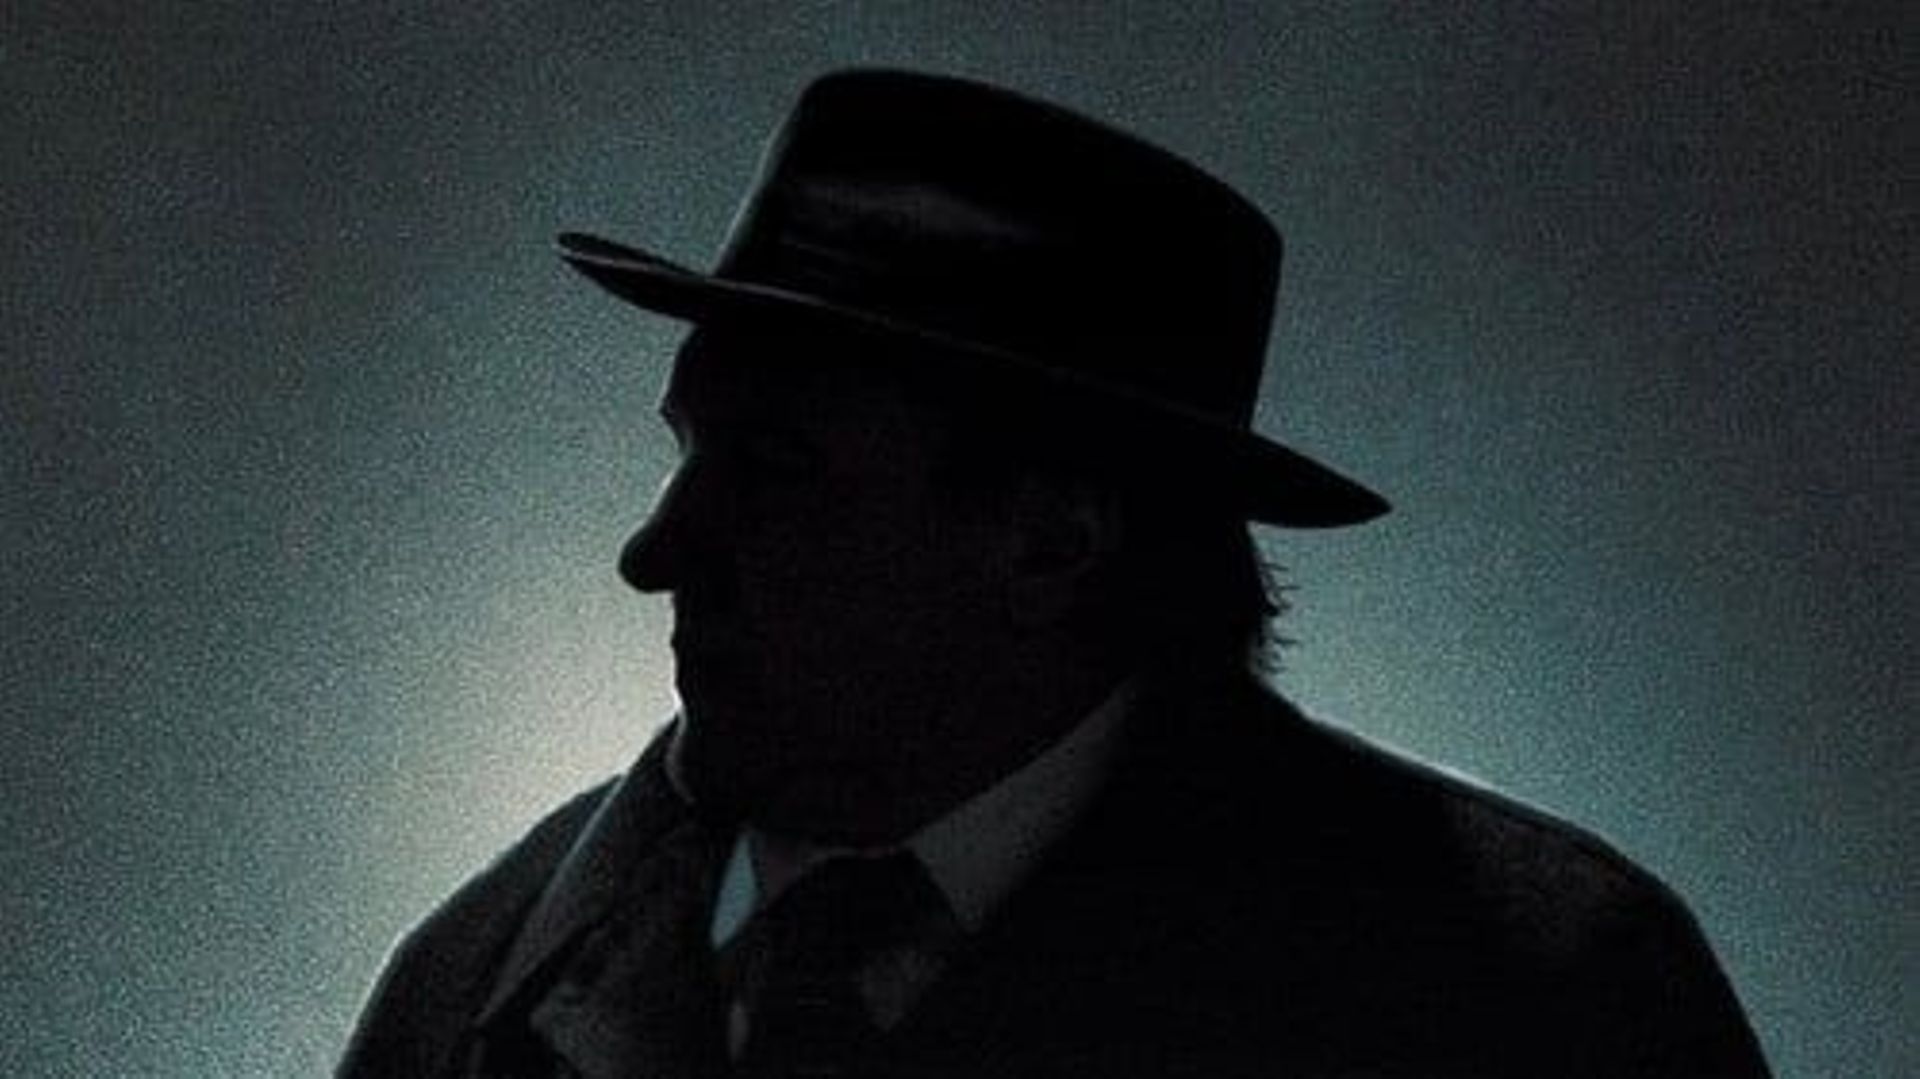 Affiche du film "Maigret et la jeune morte" réalisé par Patrice Leconte.